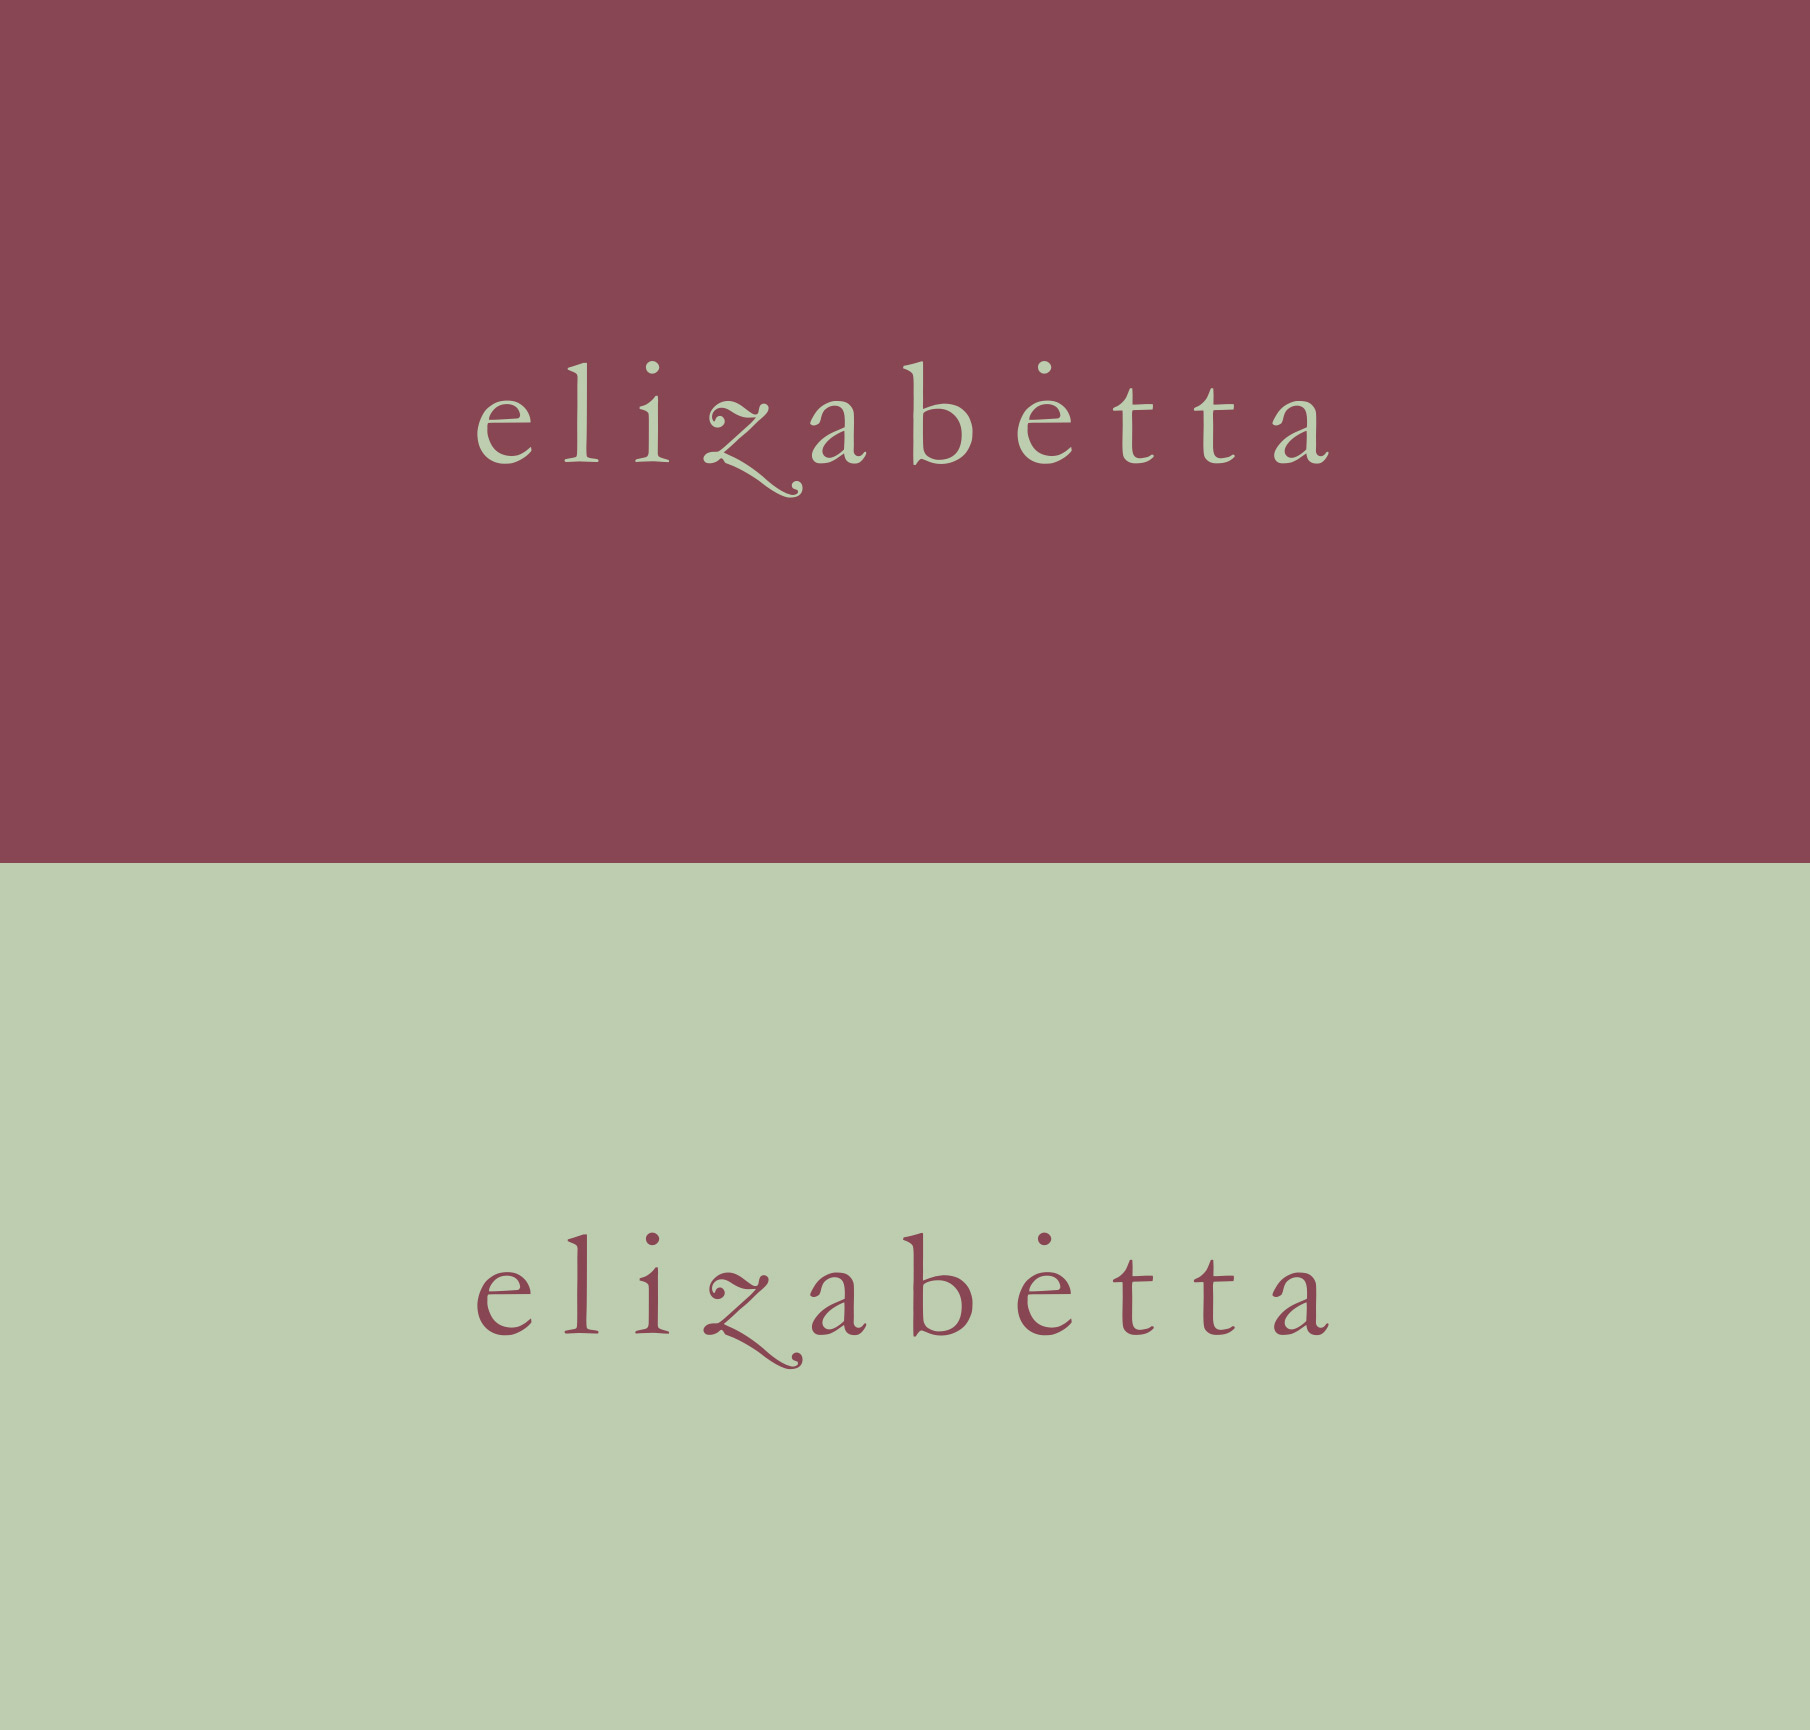 elizabetta-logo-design